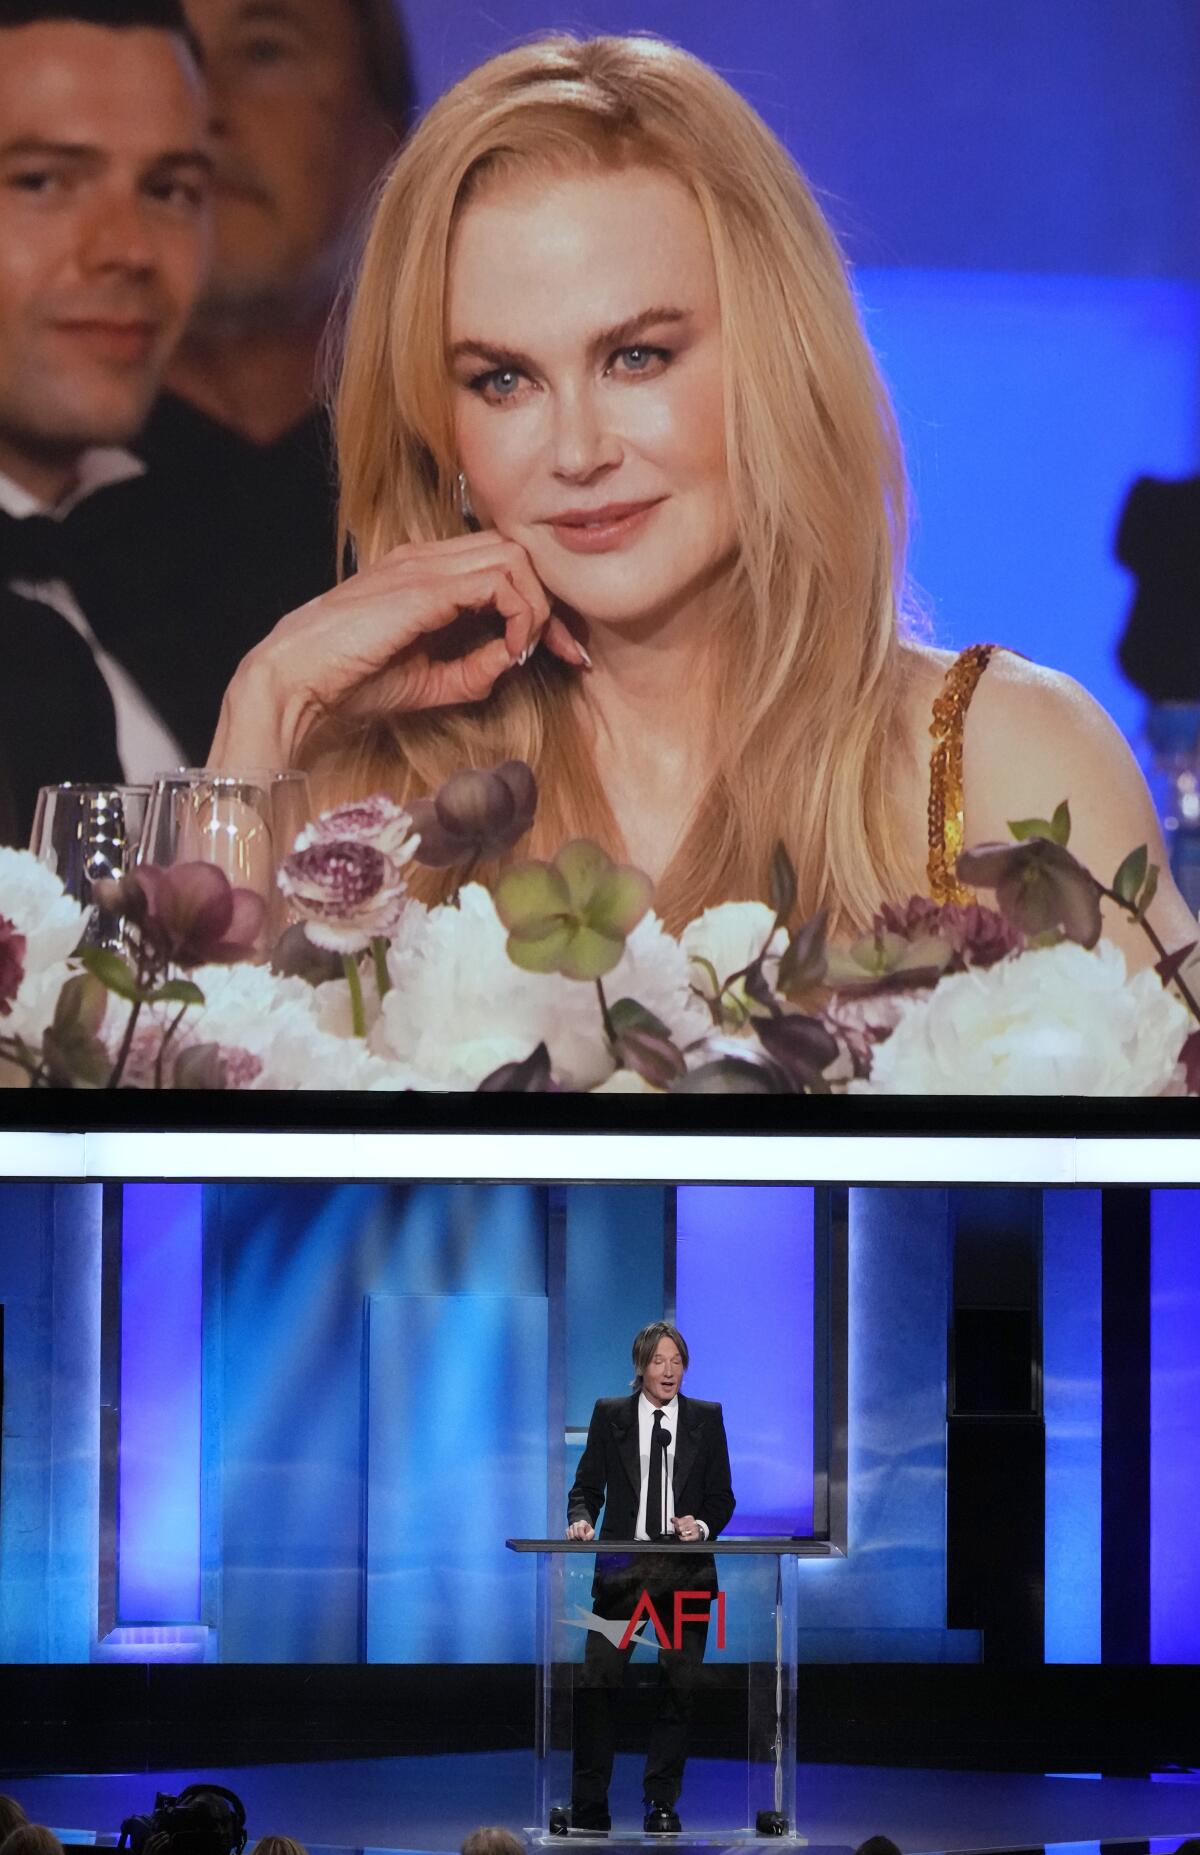 La homenajeada Nicole Kidman aparece en un monitor de video mientras su esposo Keith Urban 